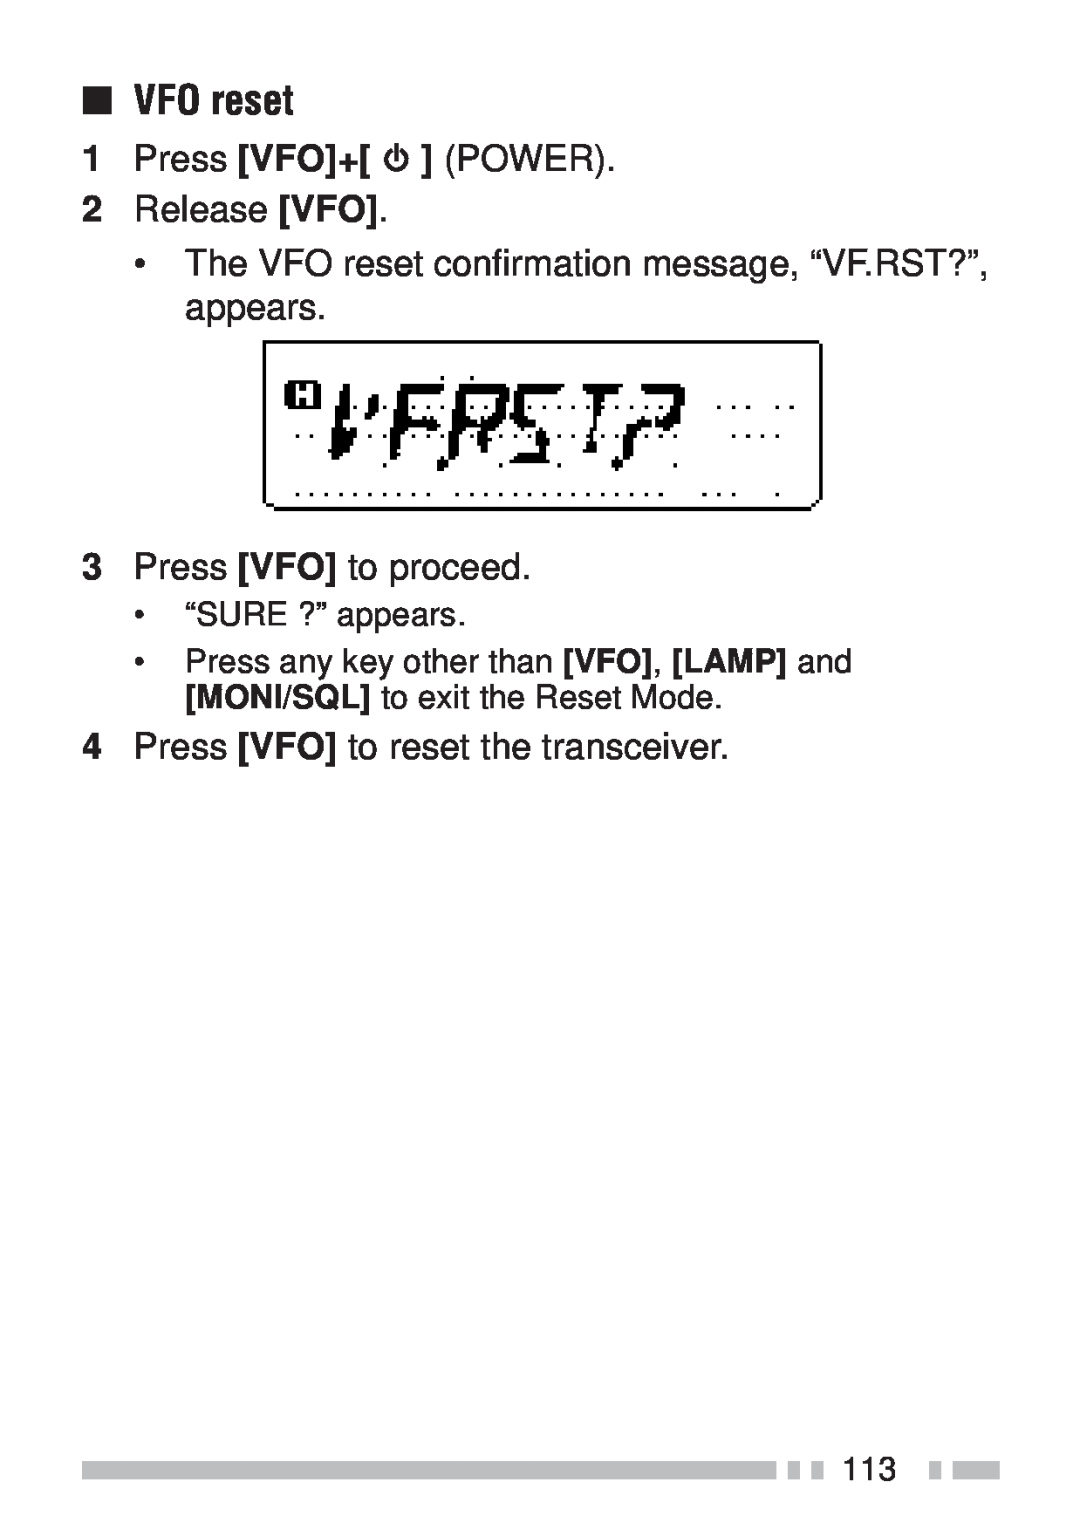 Kenwood TH-K2ET VFO reset, 1Press VFO+ POWER 2Release VFO, 3Press VFO to proceed, 4Press VFO to reset the transceiver 